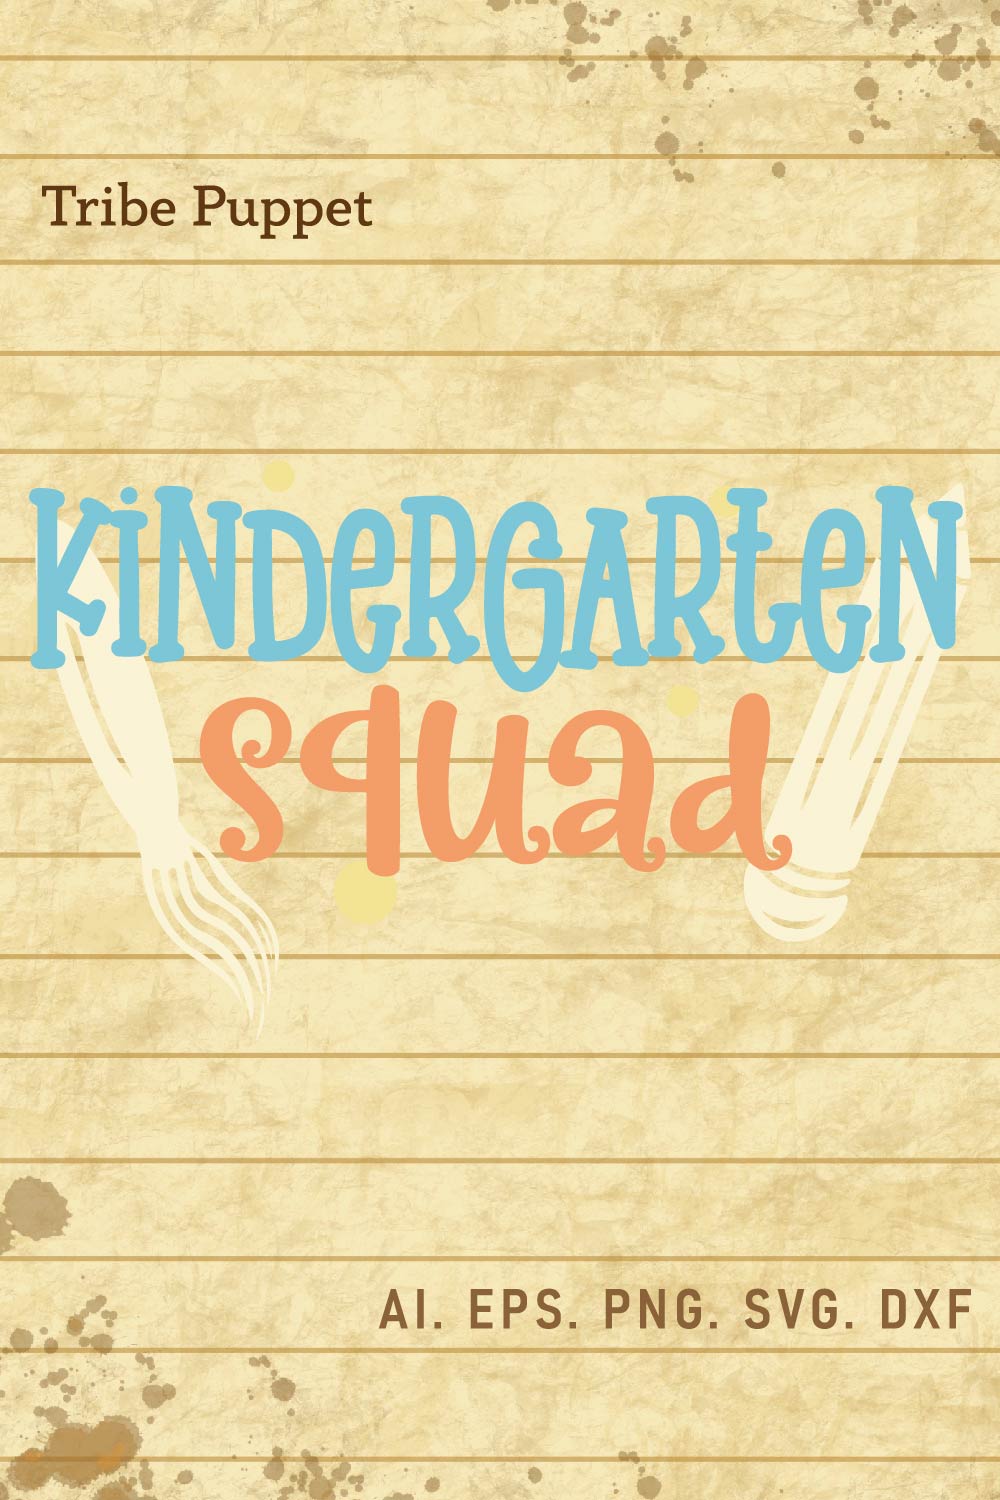 Kindergarten quotes pinterest preview image.